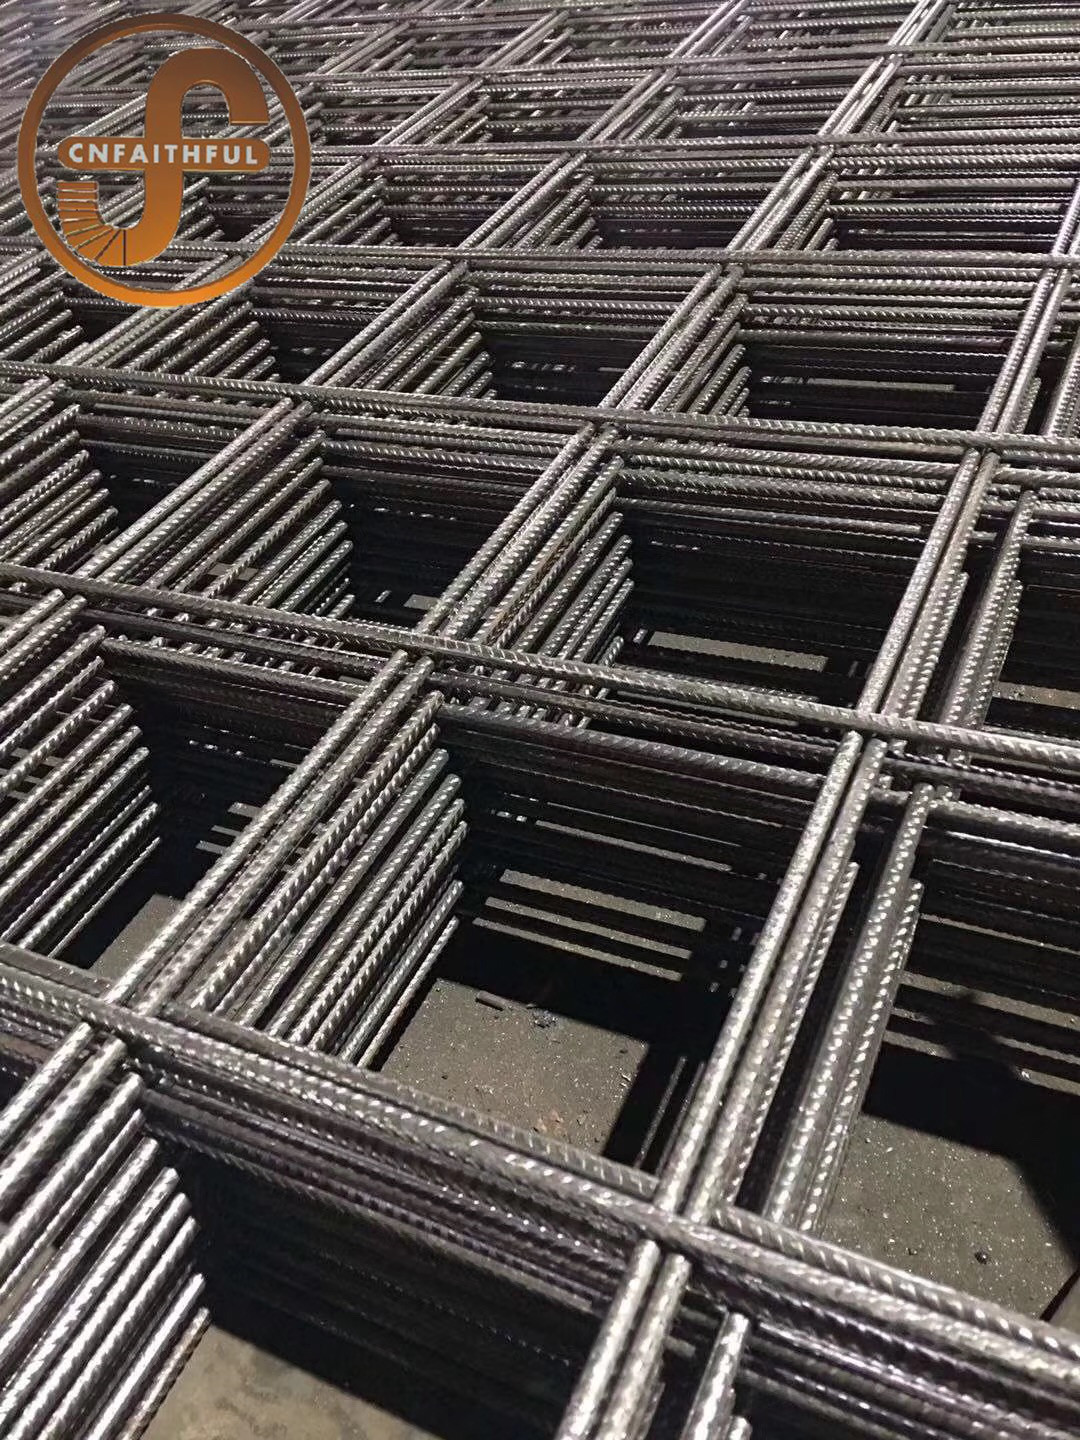 钢筋网钢筋网、钢筋网片、桁架梁、弹簧钢筋网、带肋钢筋网、钢筋焊接网、建筑钢筋网、螺纹钢筋网、煤矿钢筋网、桥梁钢筋网、隧道钢筋网